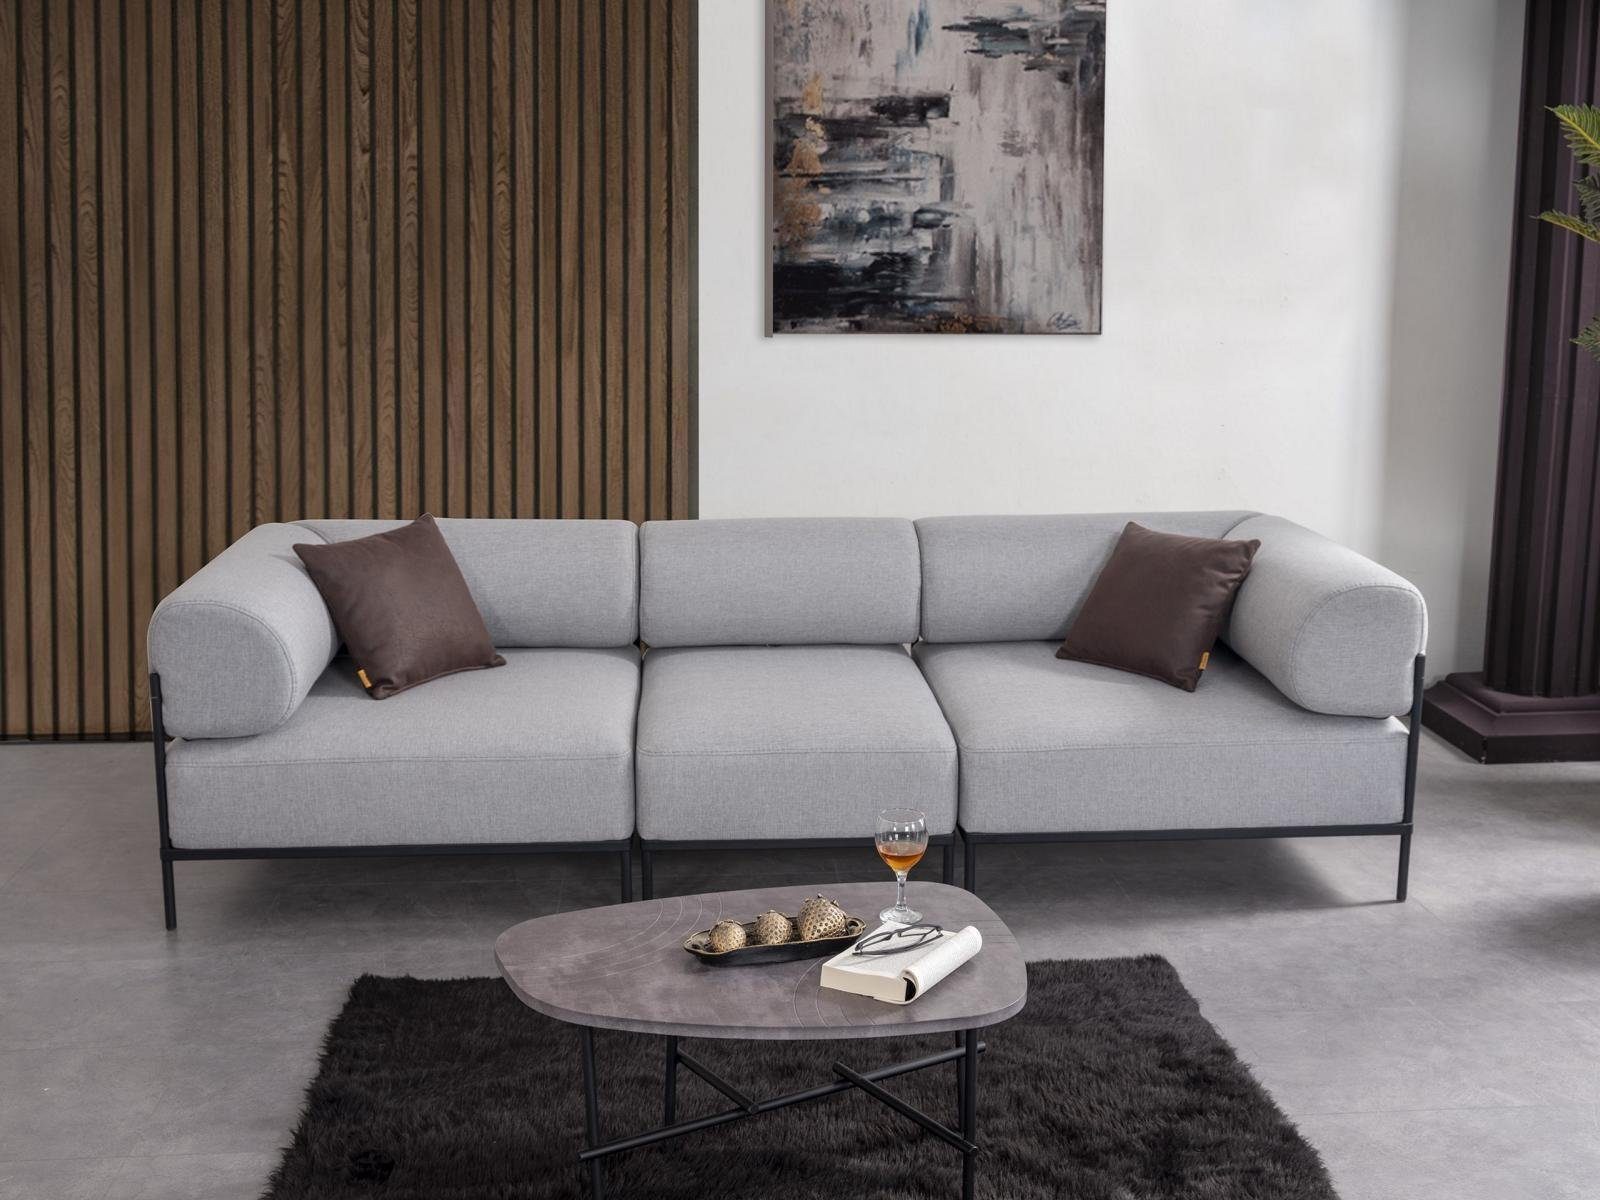 JVmoebel Sofa Wohnzimmer Sofa Dreisitzer Grau Couch Polstermöbel Luxus Einrichtung, 3 Teile, Made in Europa